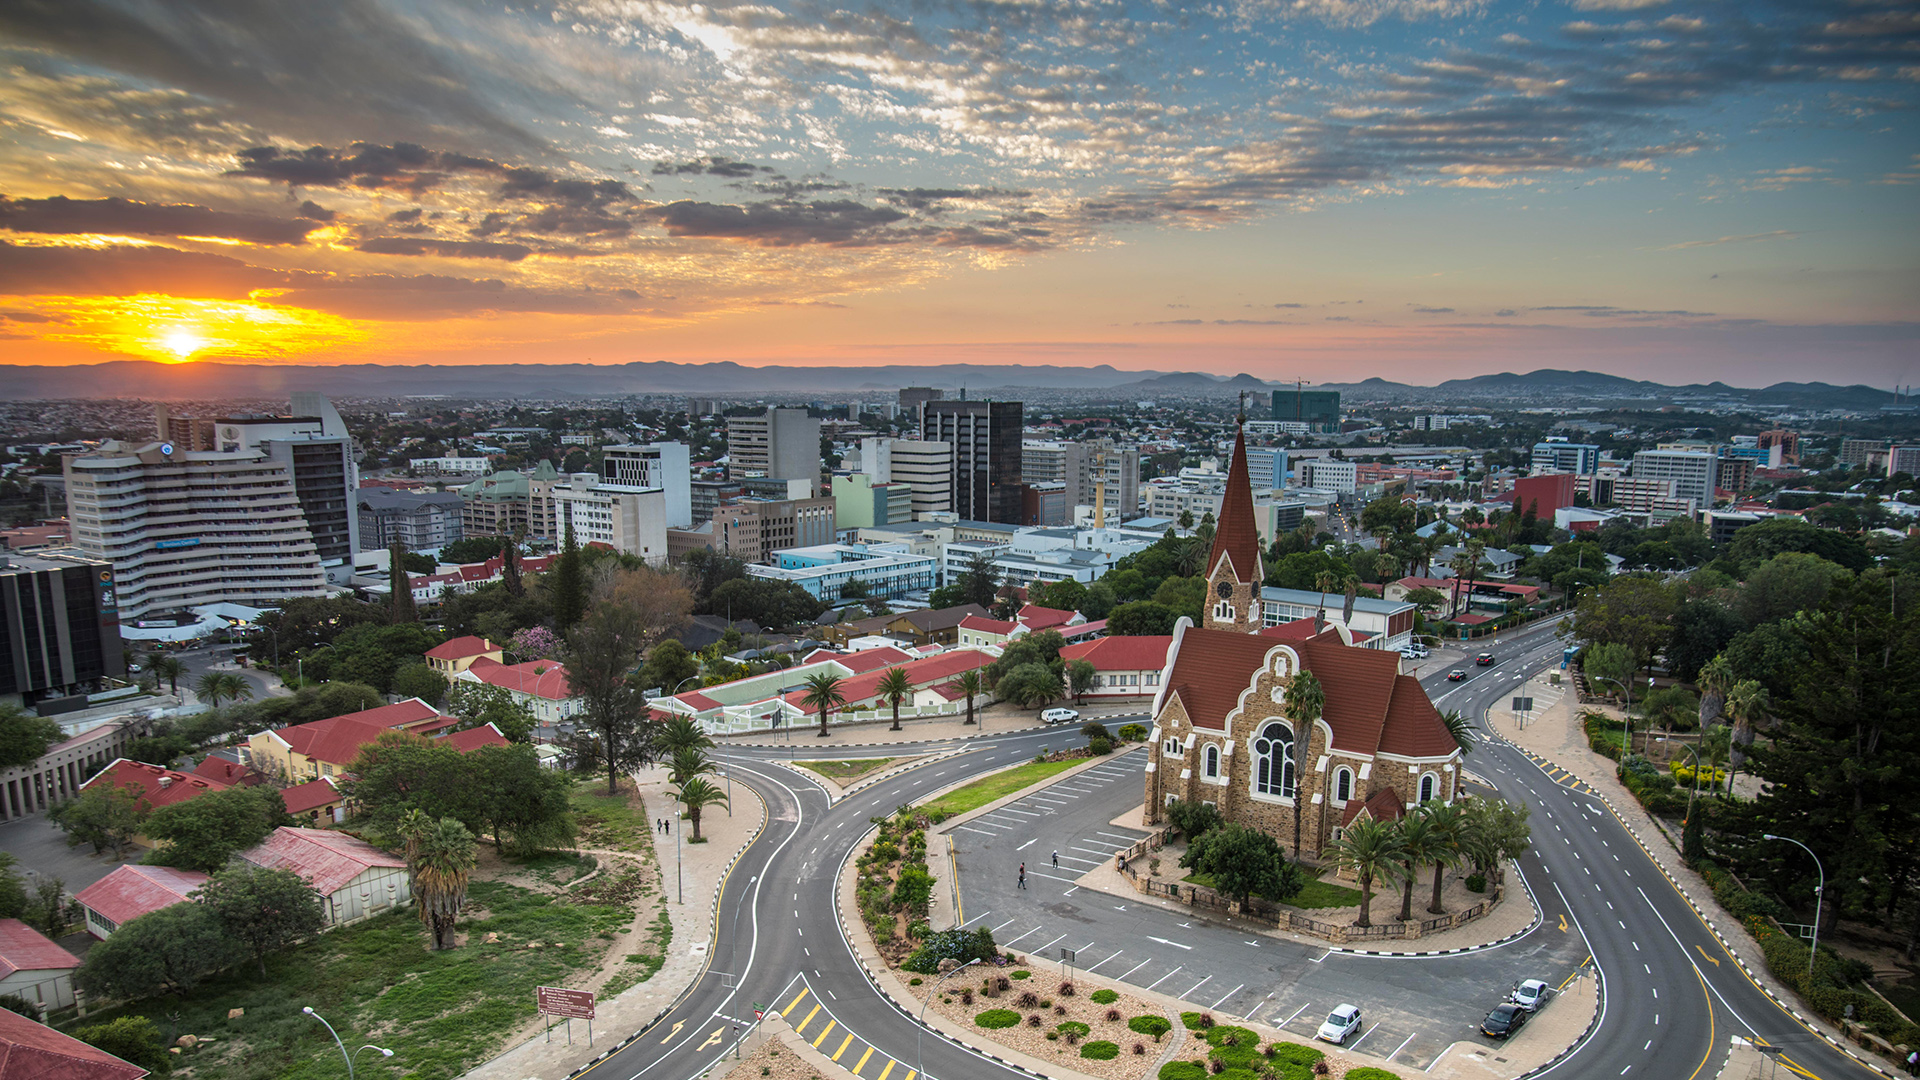 Skyline der namibischen Hauptstadt Windhoek im Abendlicht | picture alliance / imageBROKER